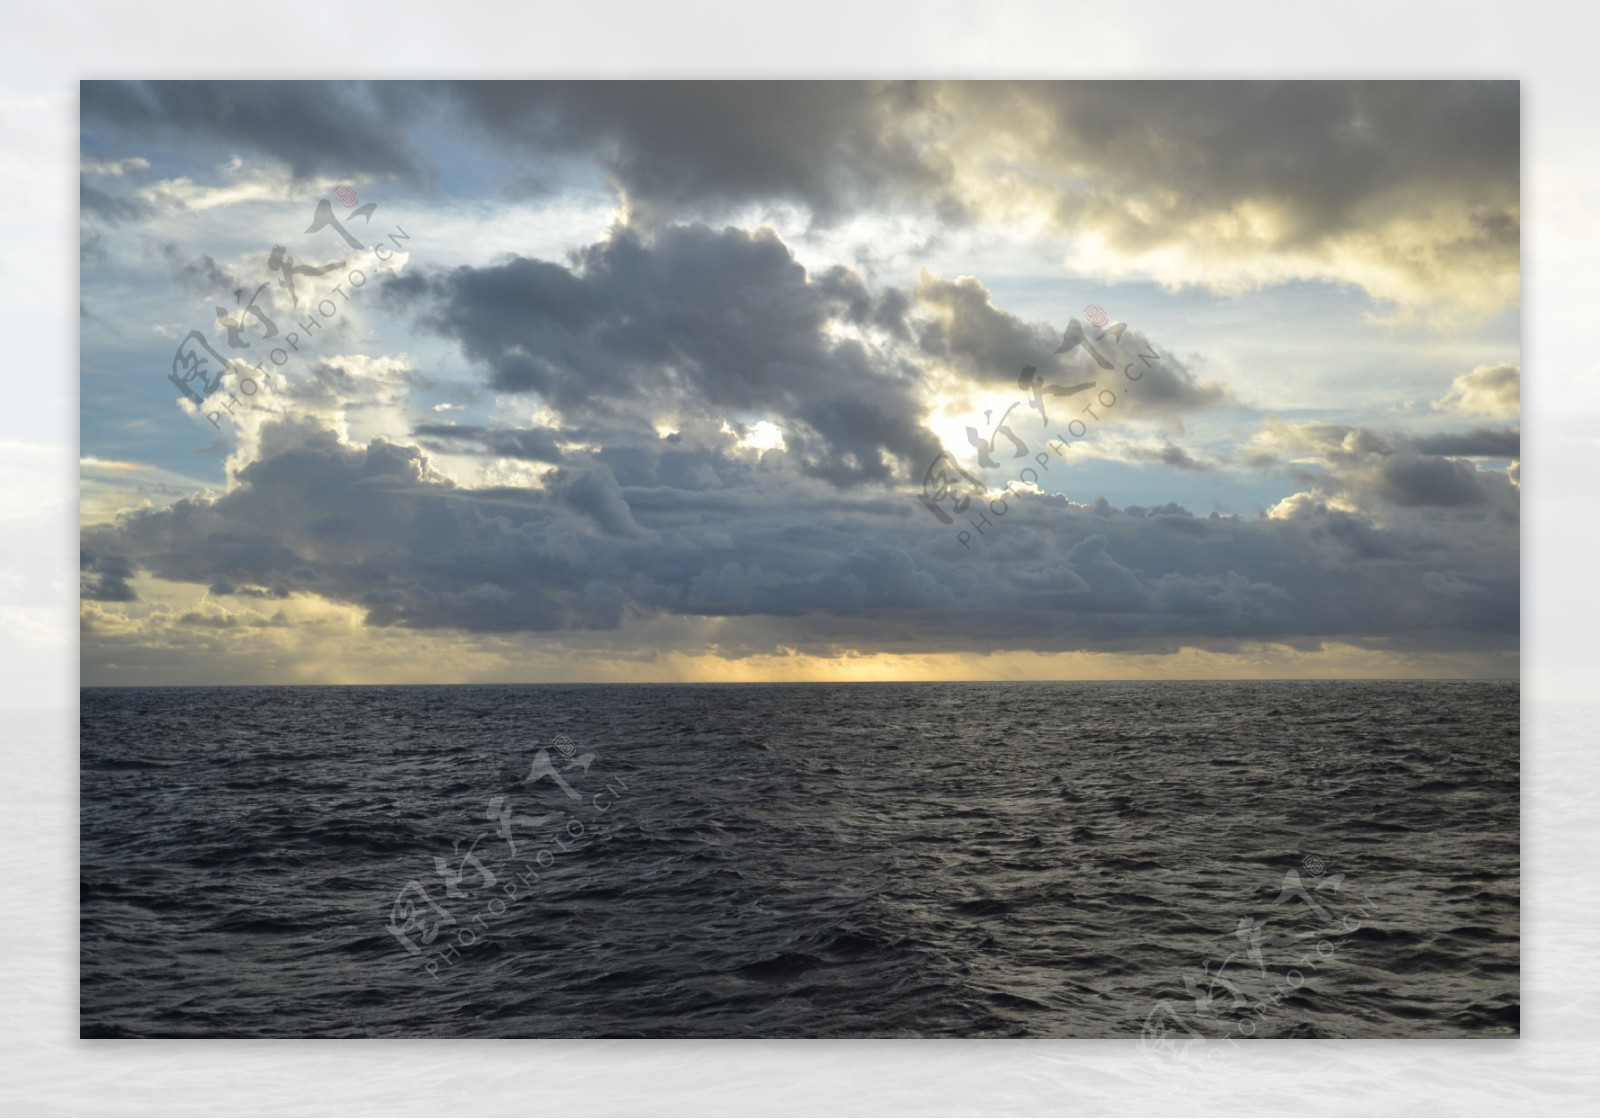 印度洋落日风景